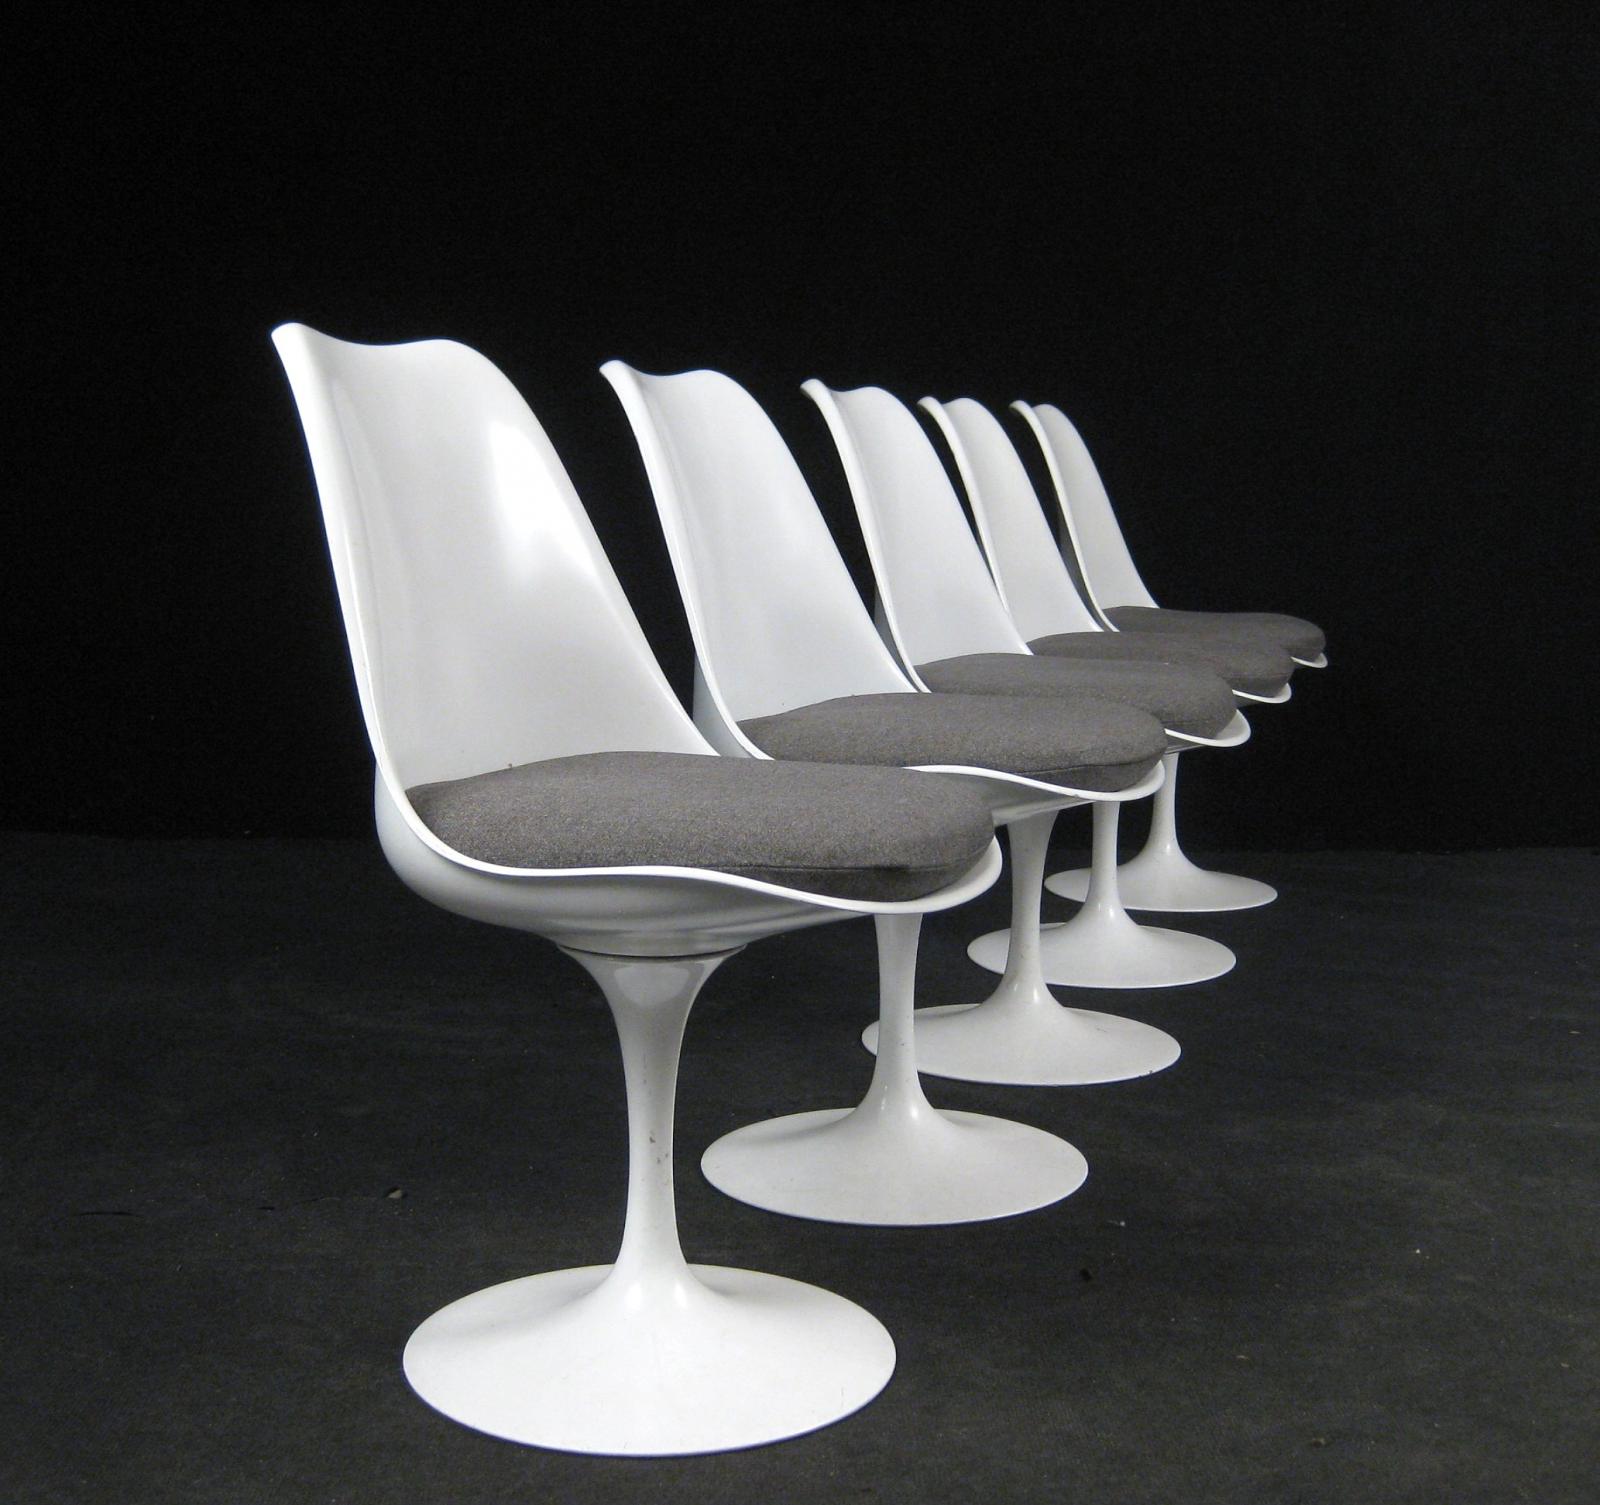 Cadeira Saarinen é um ícone do design mundial